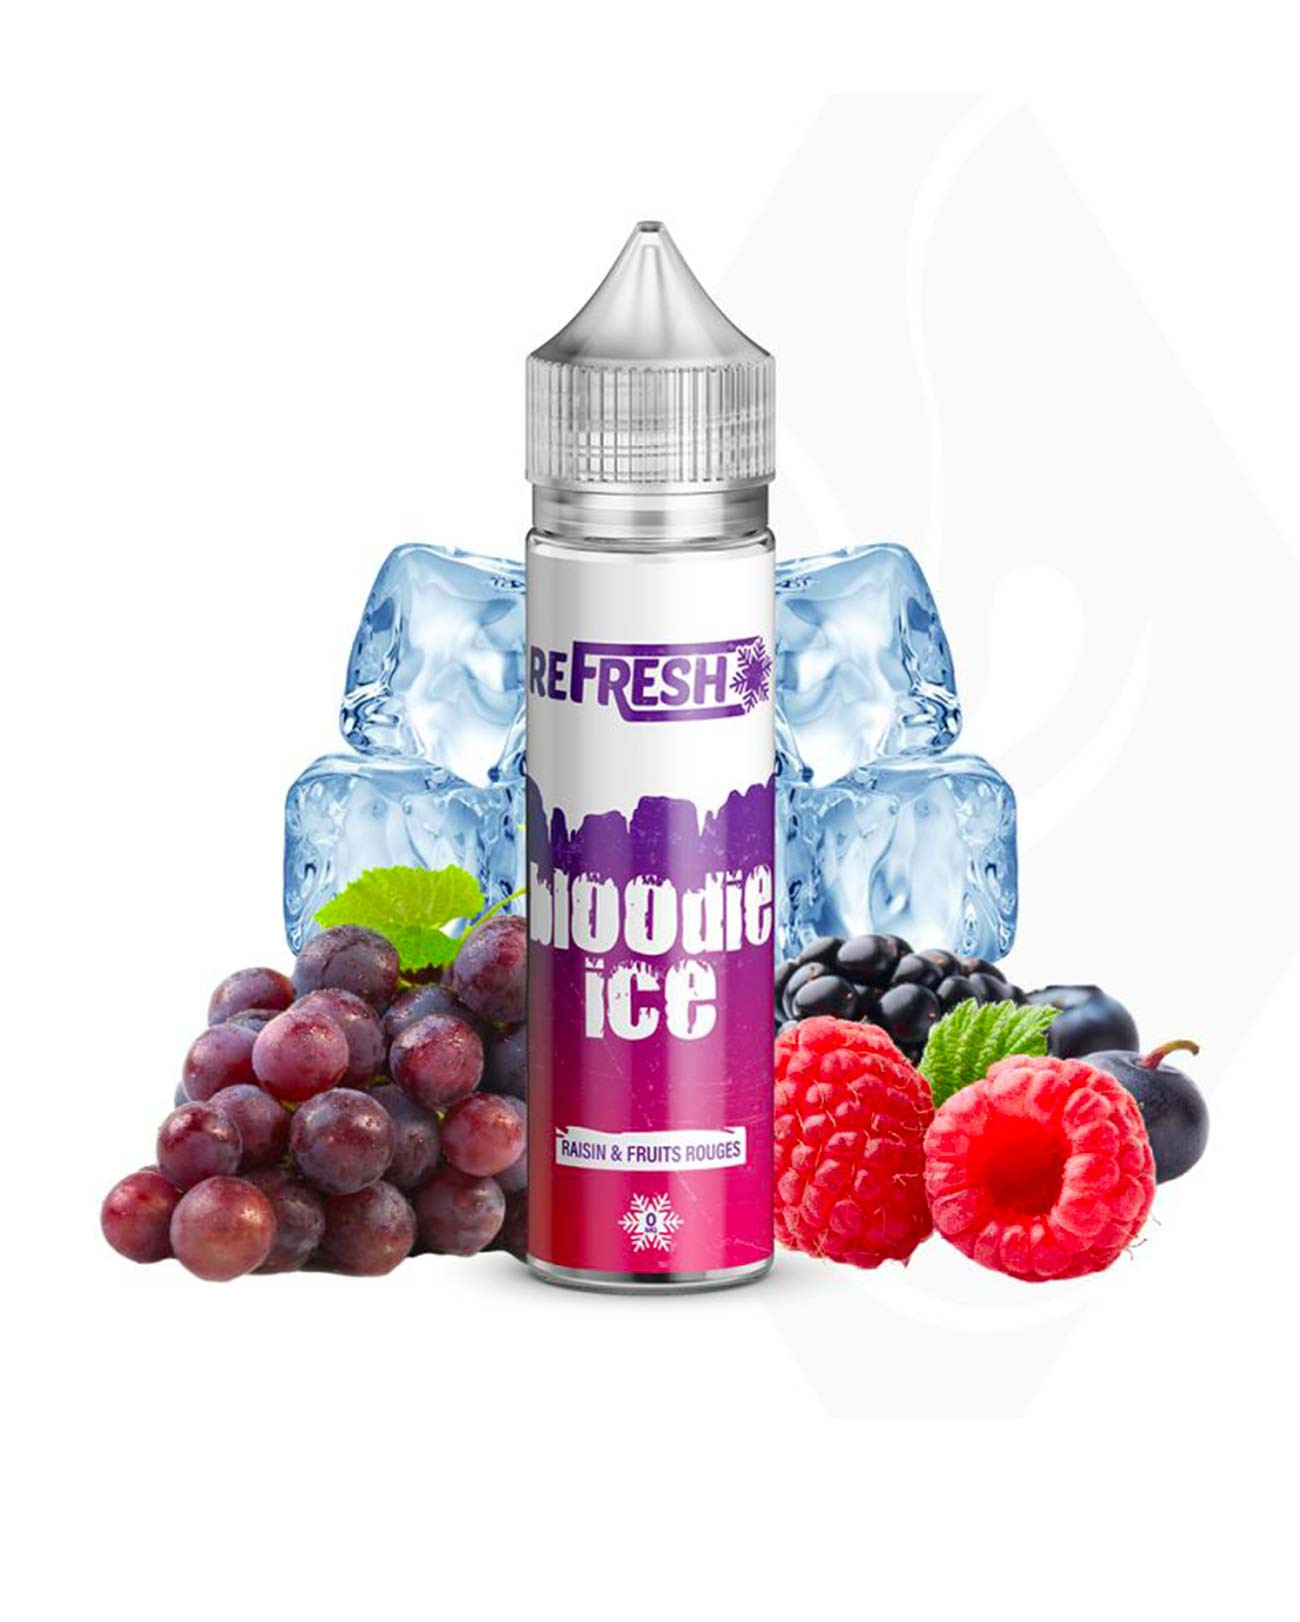 E-liquide grand format pour vapote Refresh Bloodie Ice saveur fruits rouges et raisin